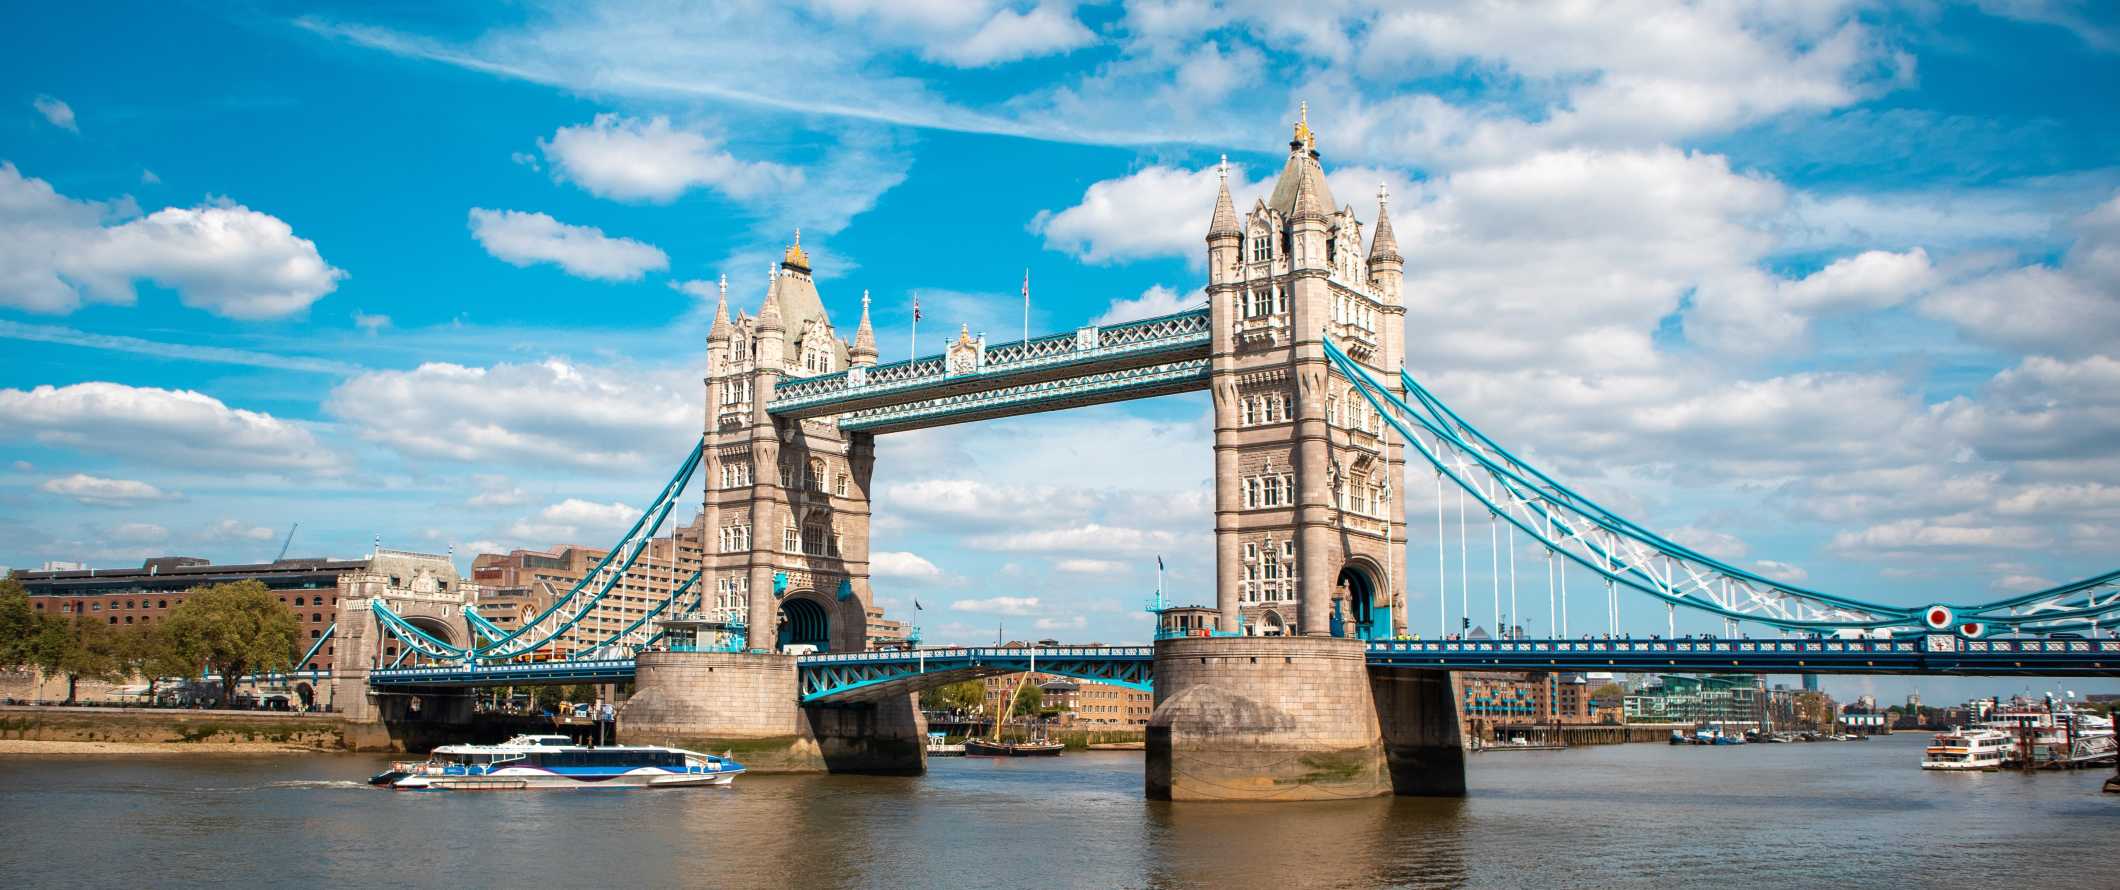 Vista da famosa Tower Bridge que atravessa o Tâmisa, em Londres, Inglaterra